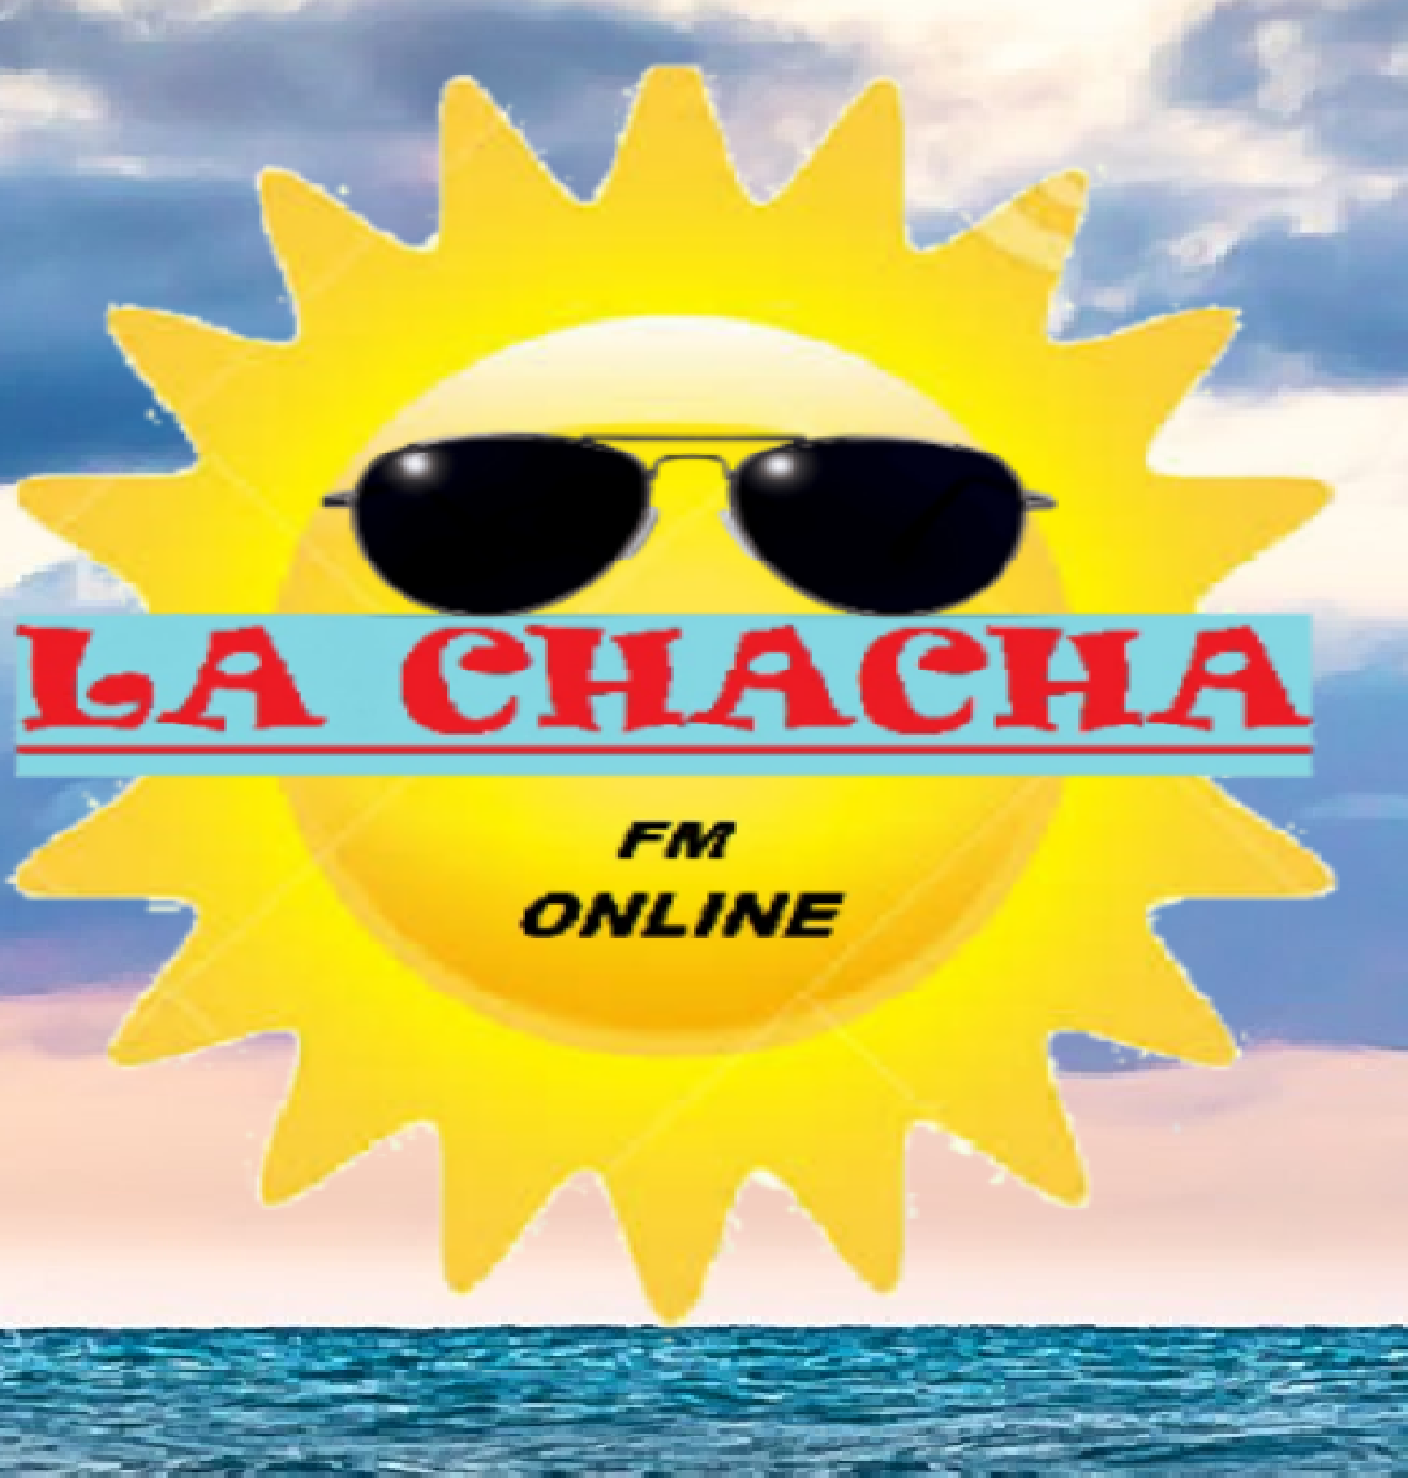 LA CHACHA FM